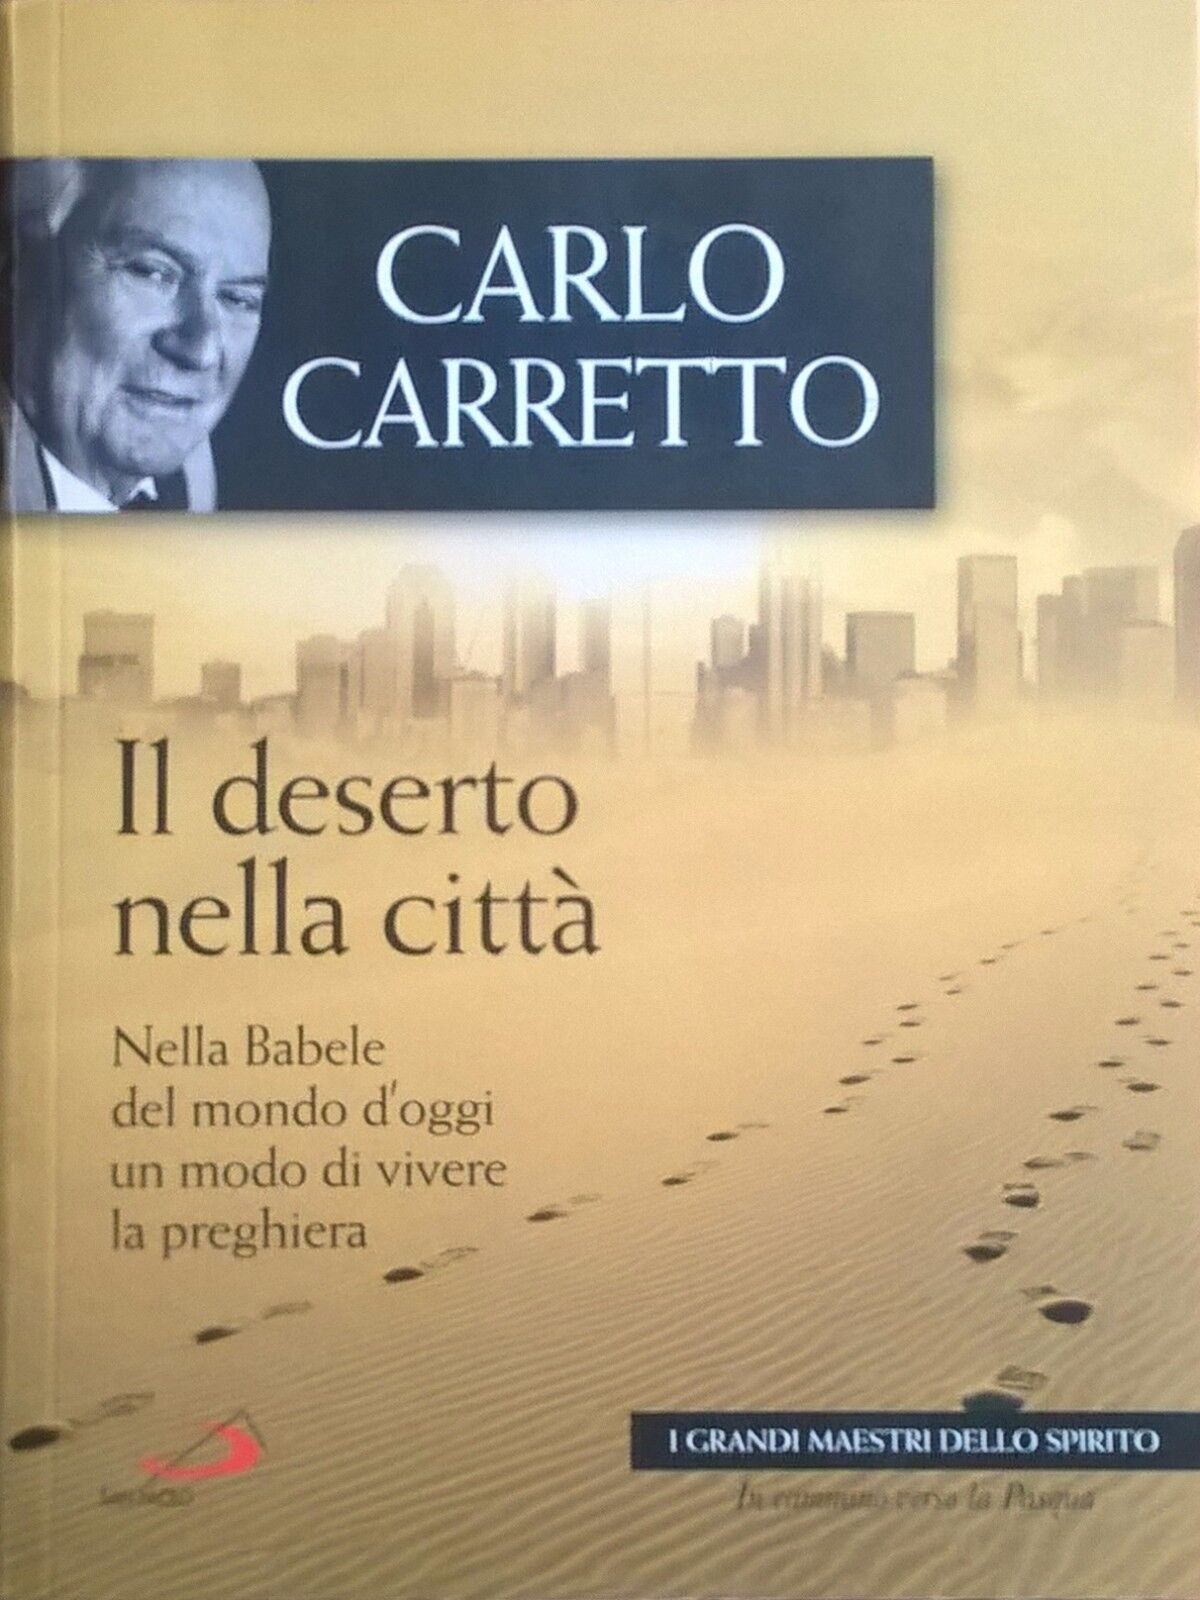 Il deserto nella citt? - Carlo Carretto (1986,  San Paolo) Ca